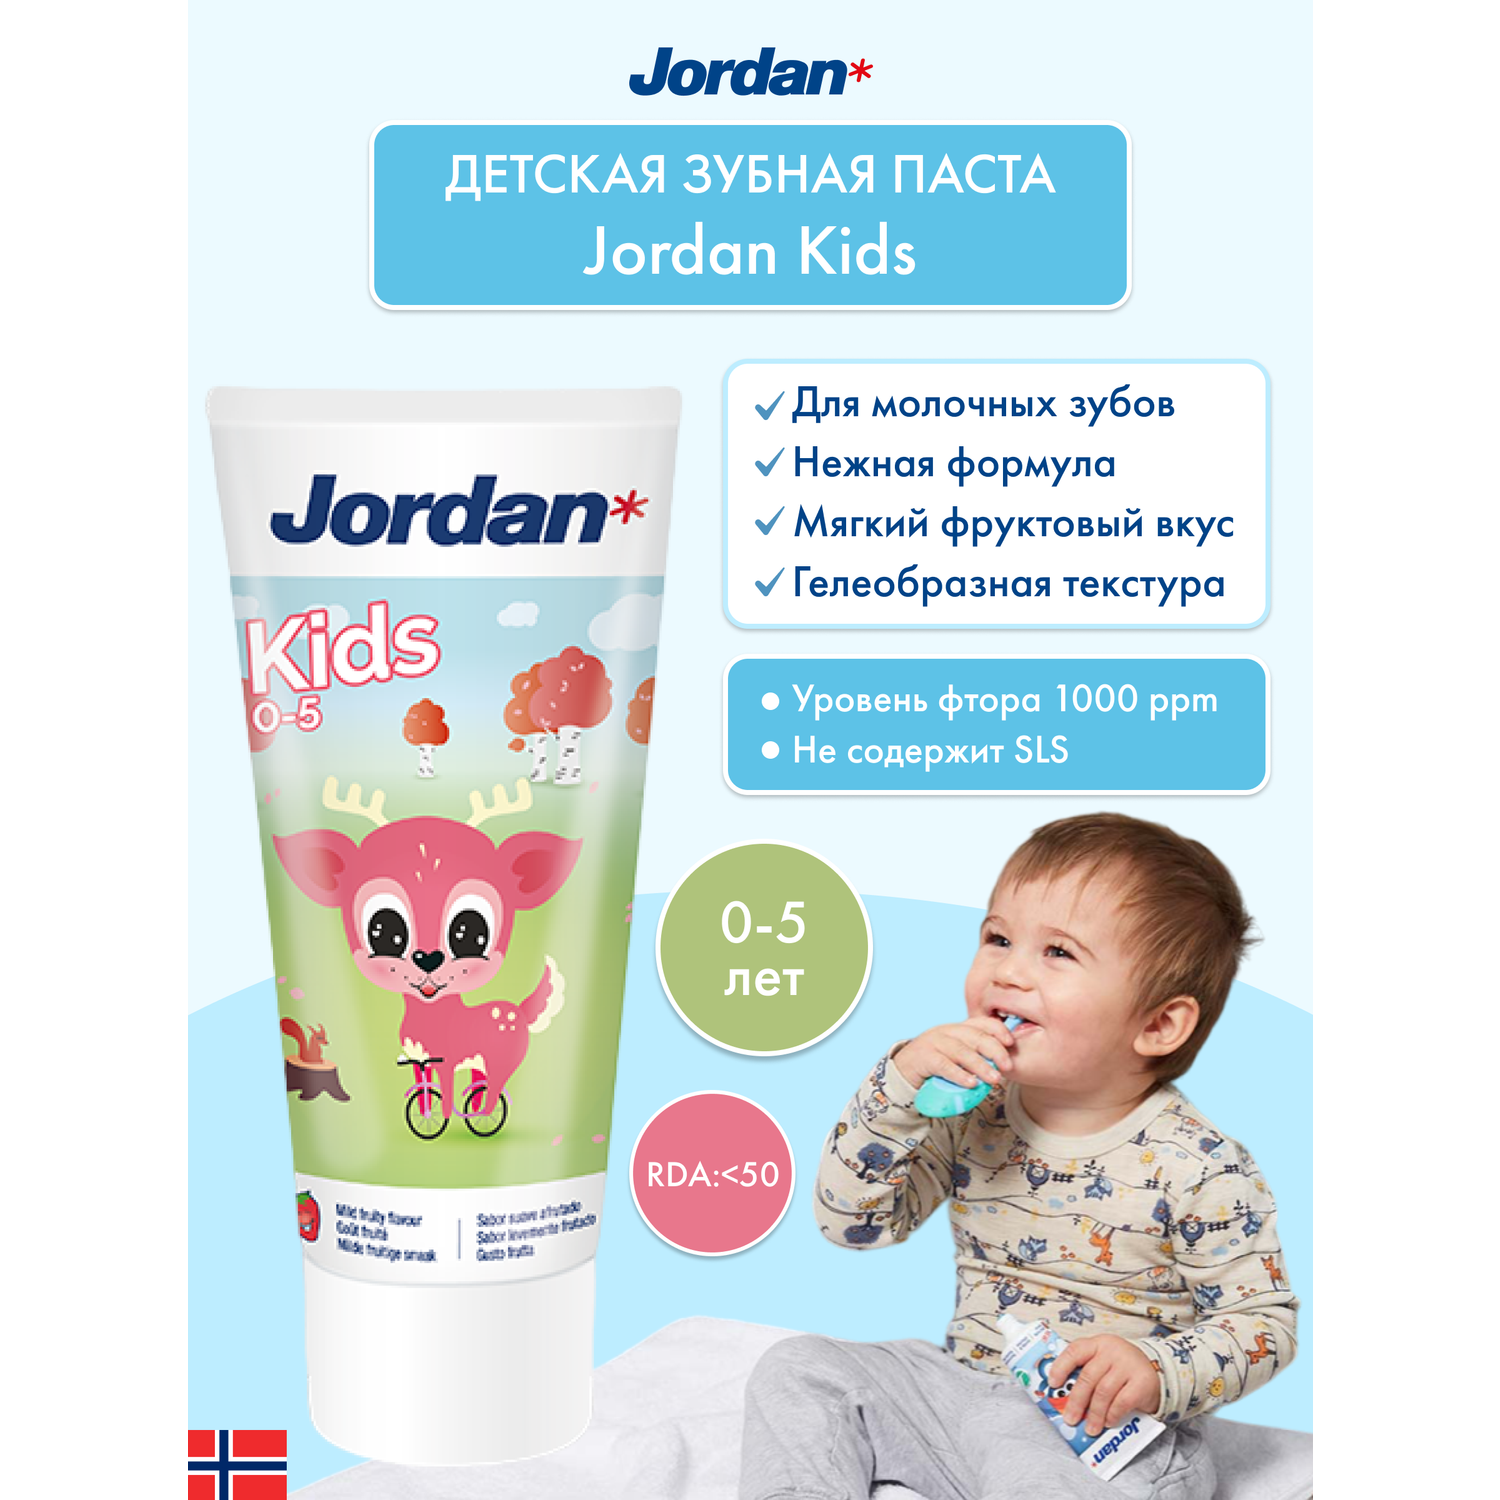 Детская зубная паста JORDAN Kids 0-5 с фтором и нежным фруктовым вкусом - фото 2